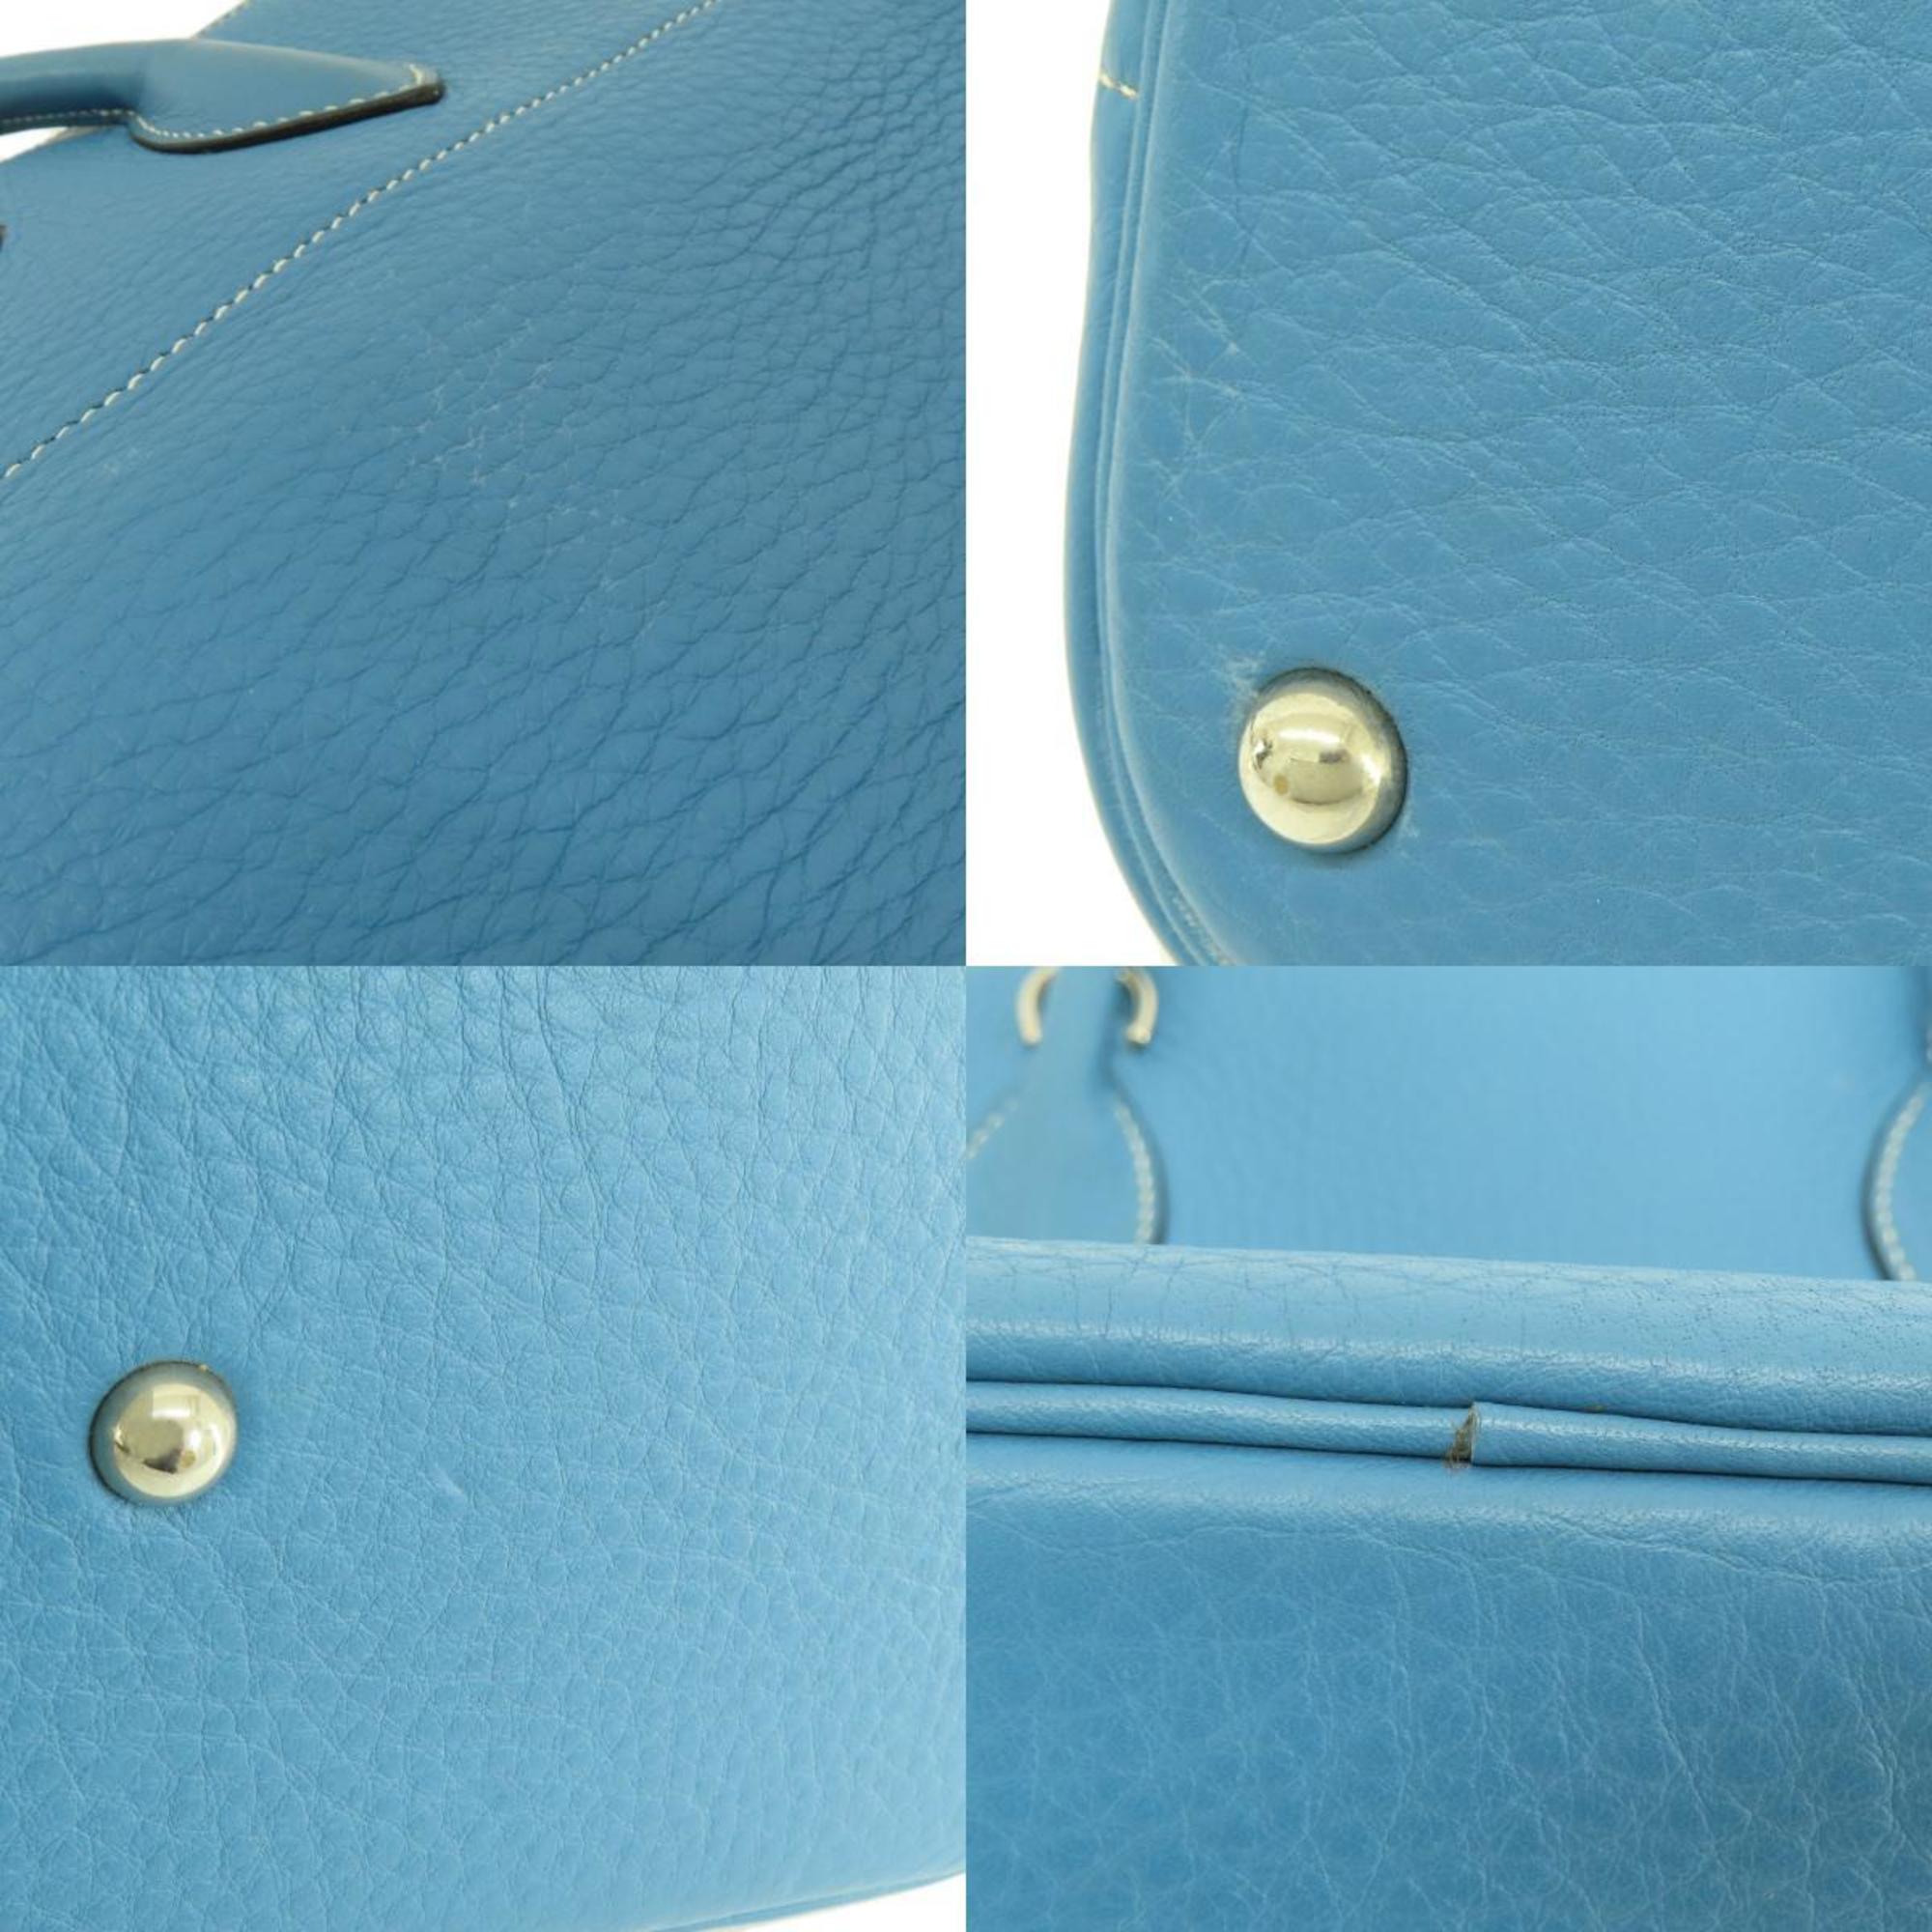 Hermes Bolide 35 Blue Jean Handbag Taurillon Women's